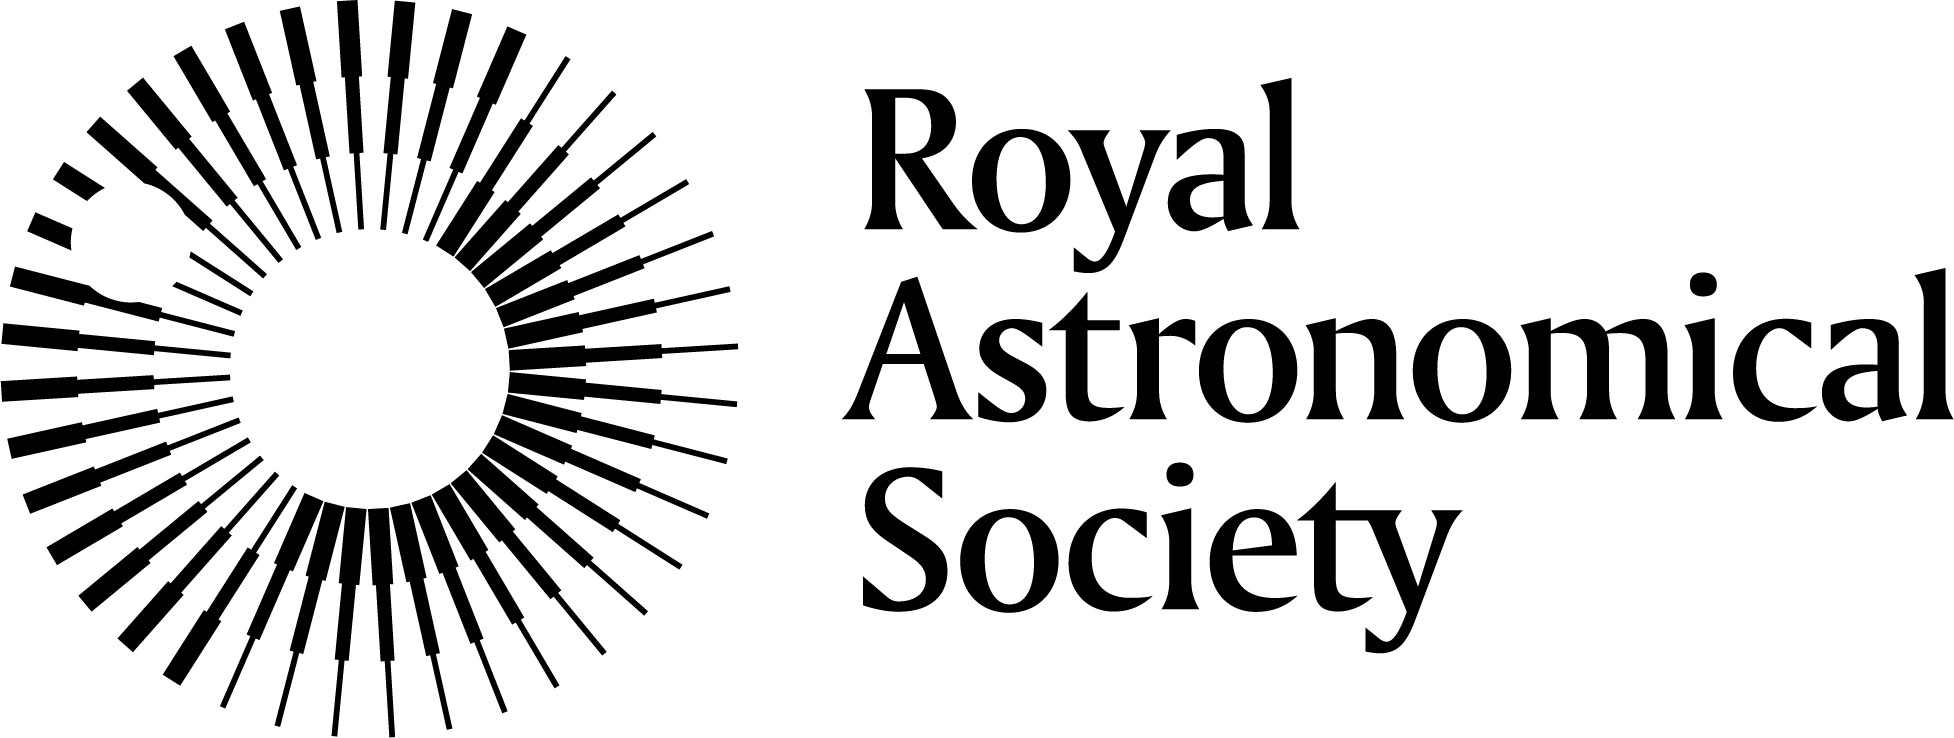 RAS و JWST |  الجمعية الفلكية الملكية